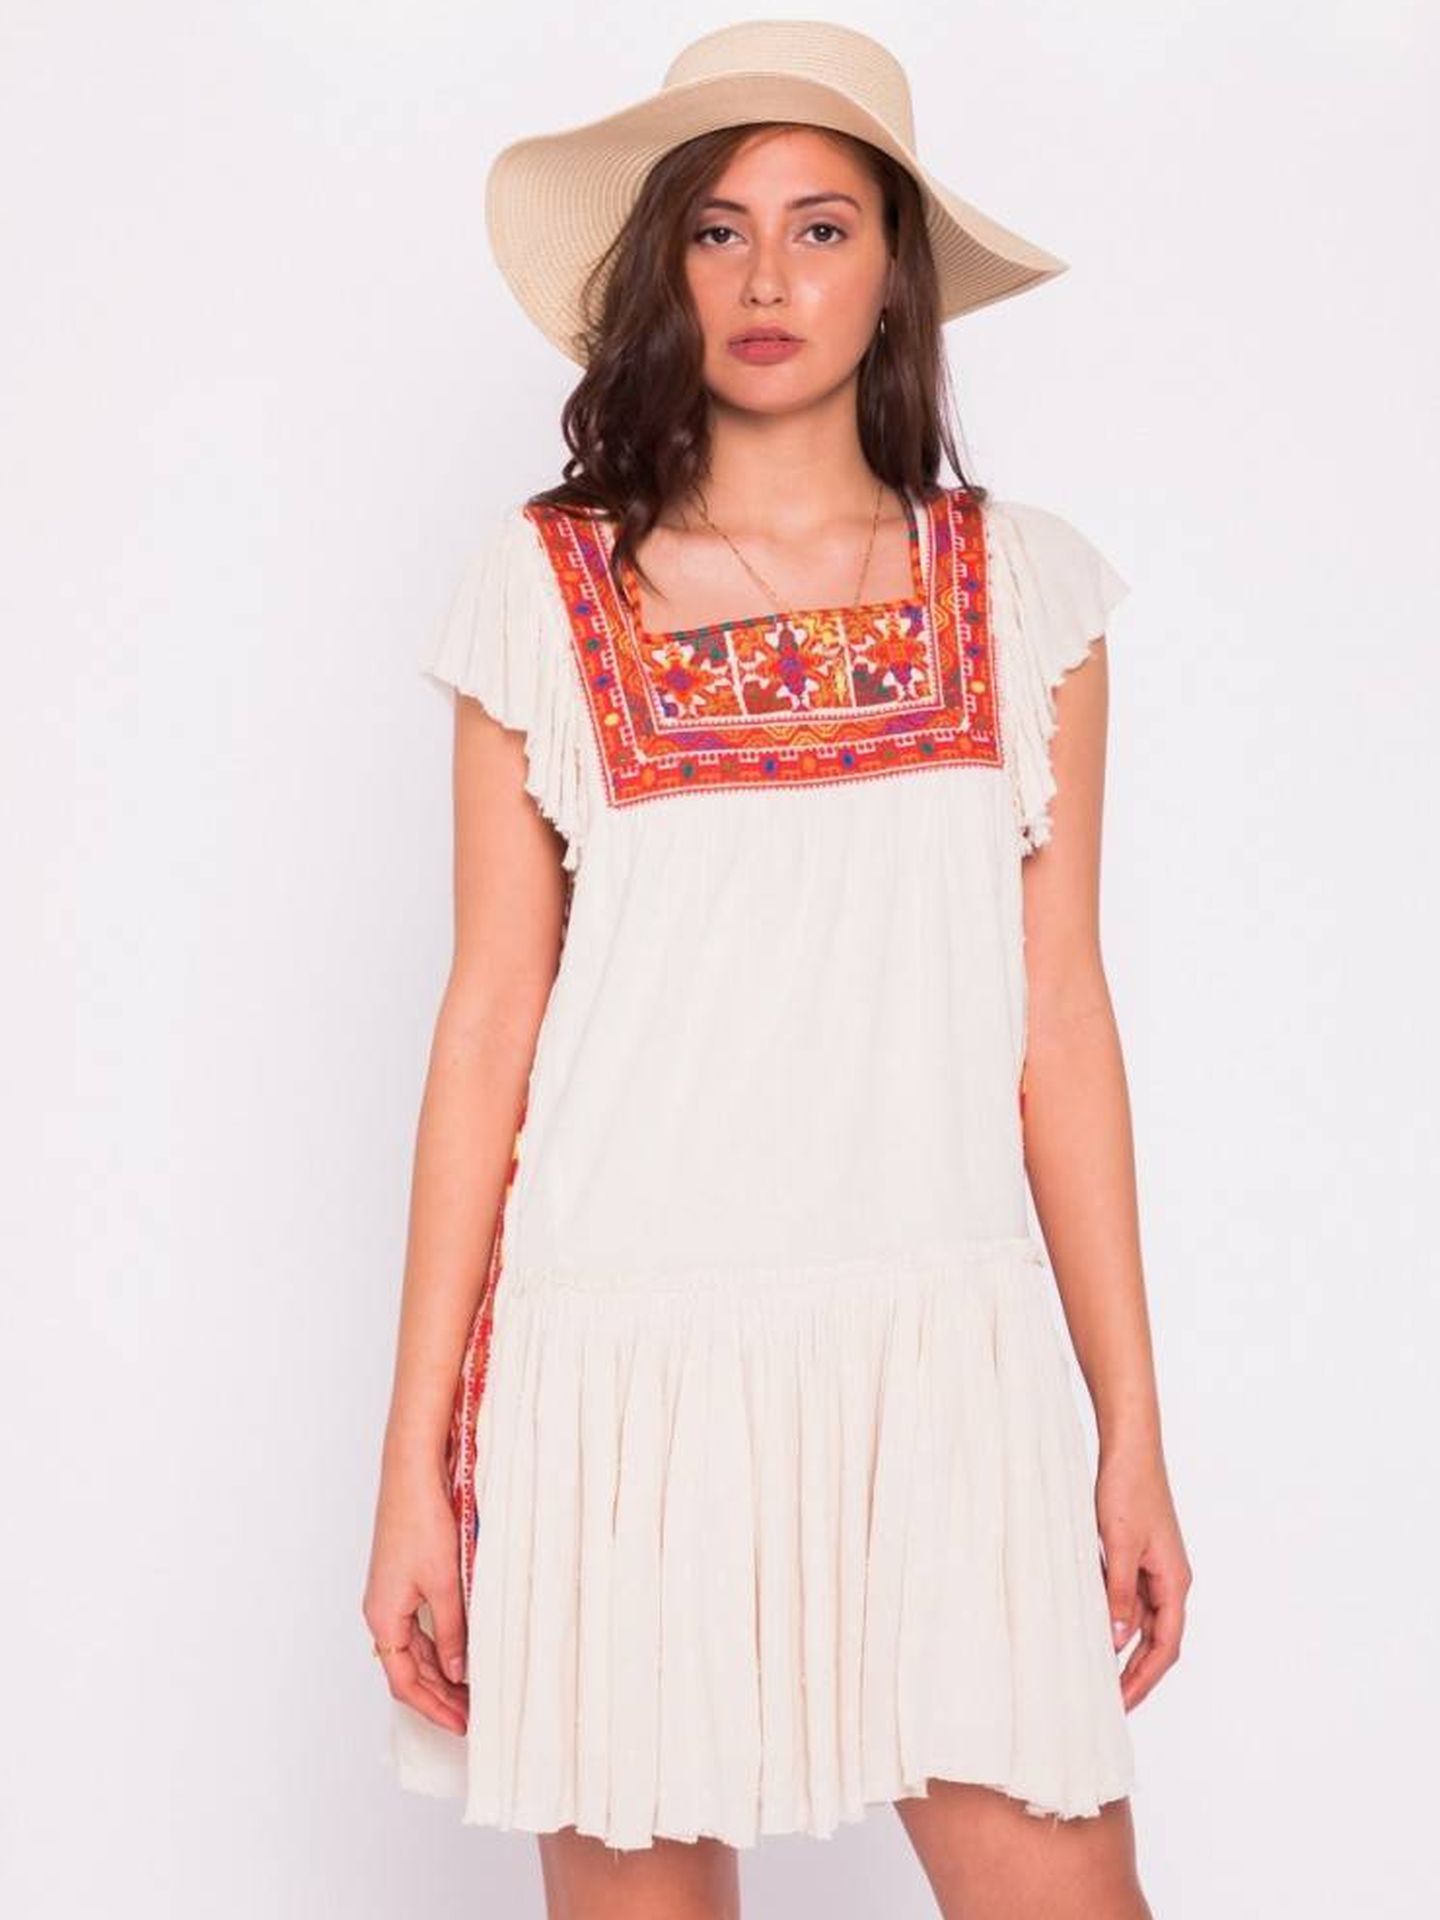 El vestido tal y como se muestra en la shop online de Sara Carbonero. (Cortesía)